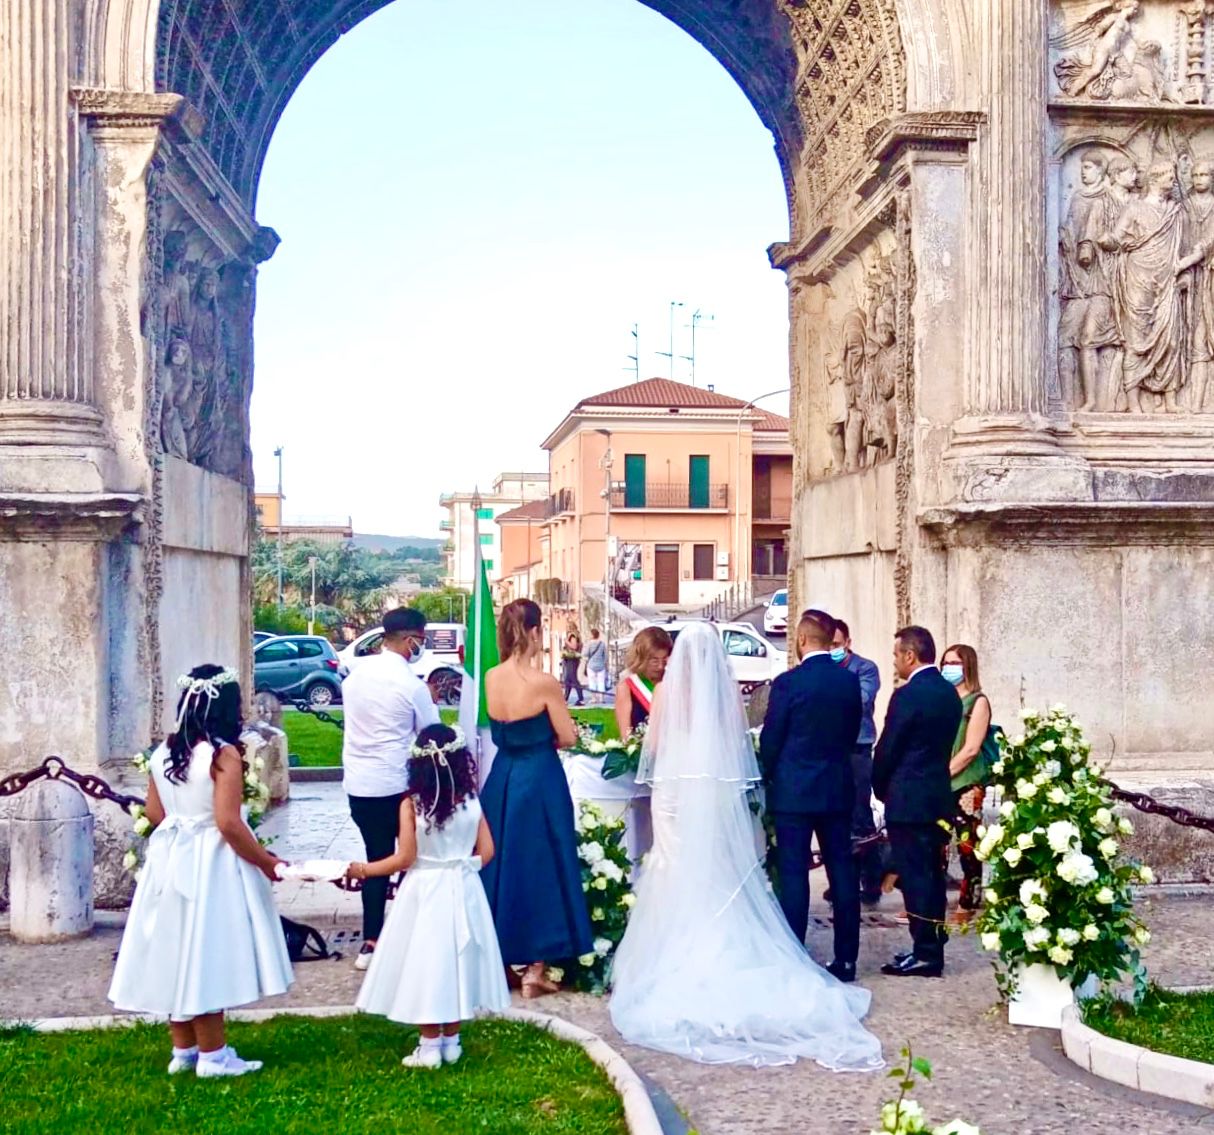 Matrimoni civili, per la prima volta un “si” ai piedi dell’Arco di Traiano di Benevento